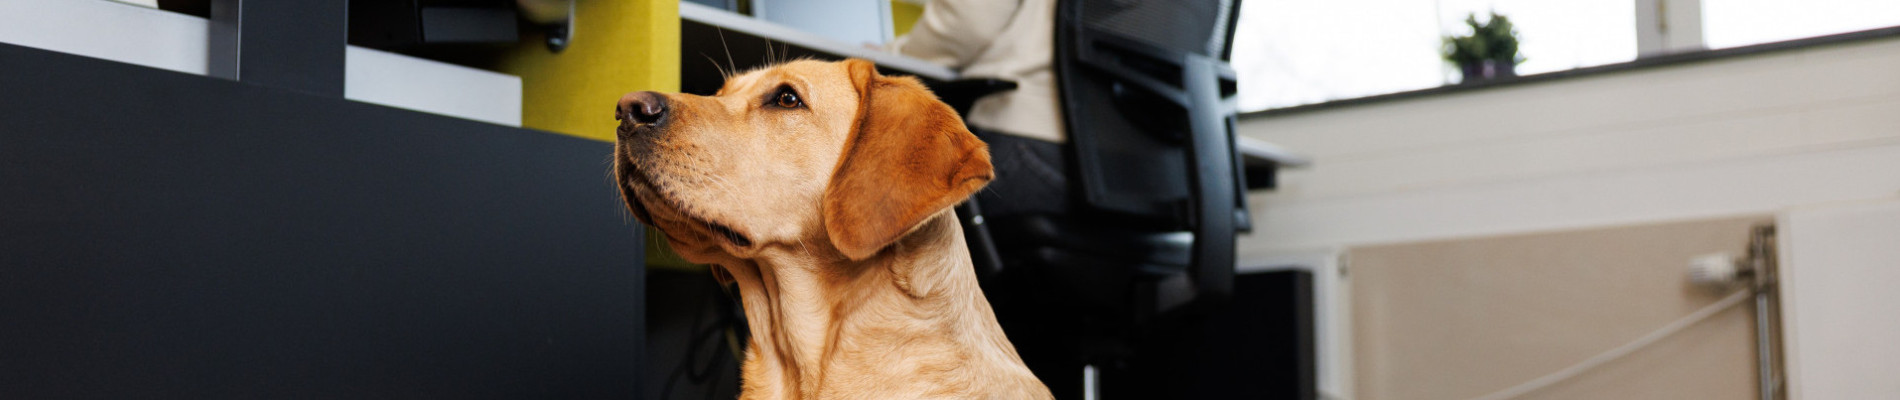 hond ligt in een mand naast een bureau in kantooromgeving. Erachter is een collega achter een beeldscherm aan het werk.